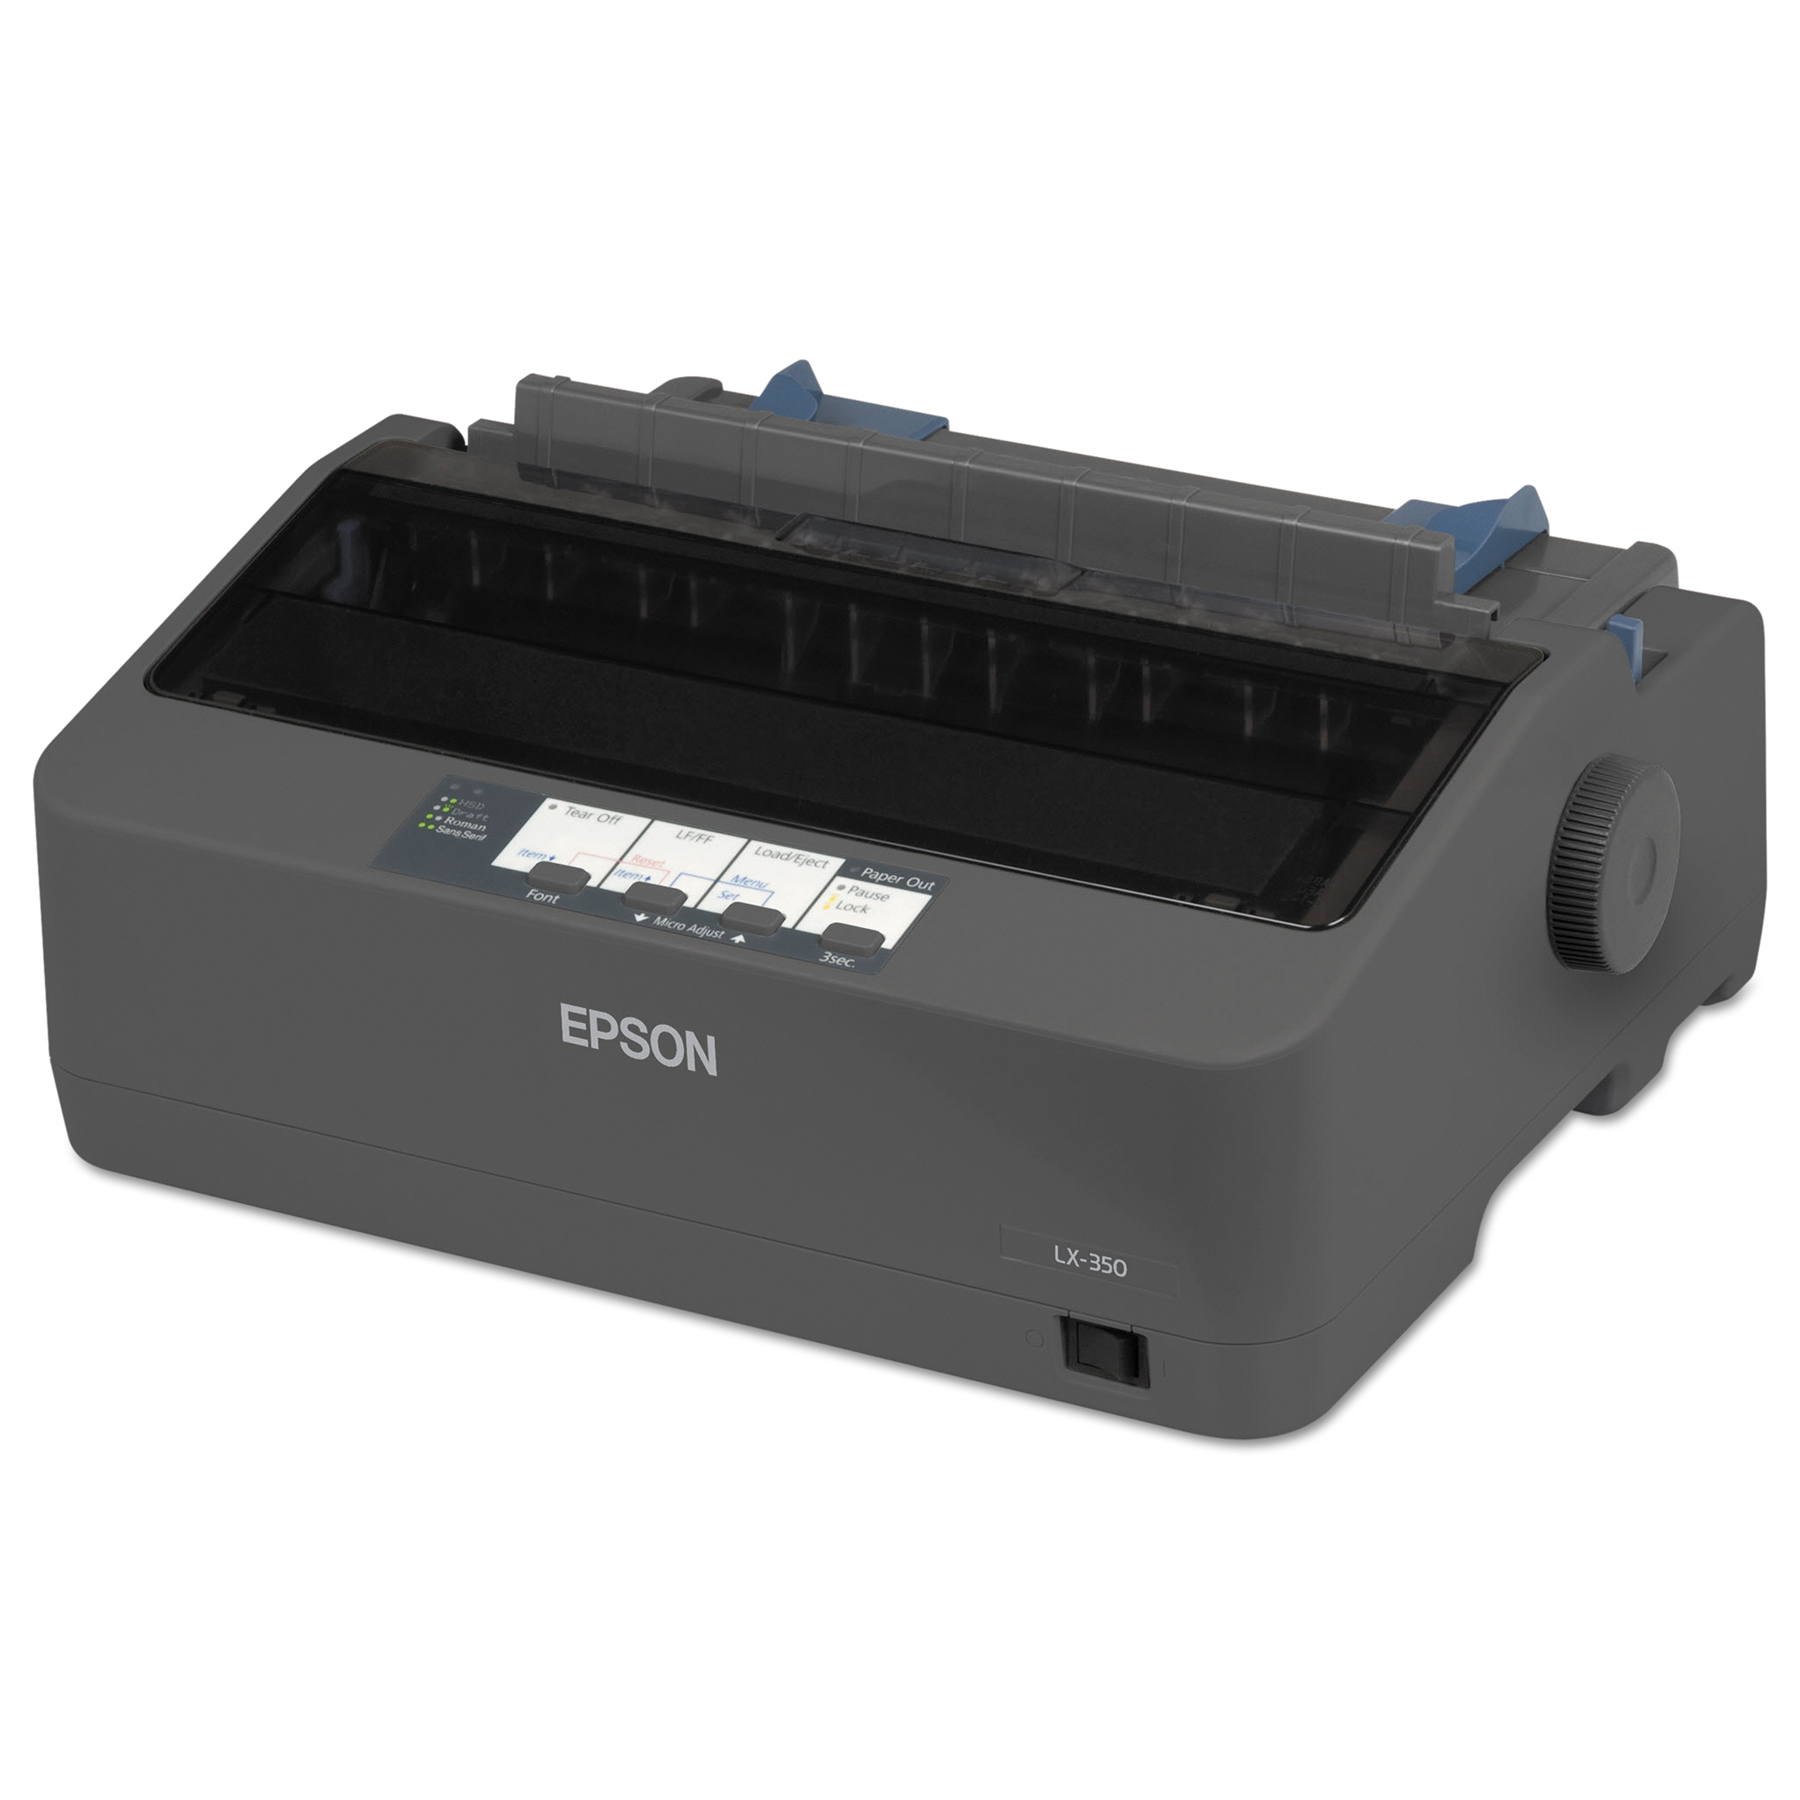 LX-350 Dot Matrix Printer